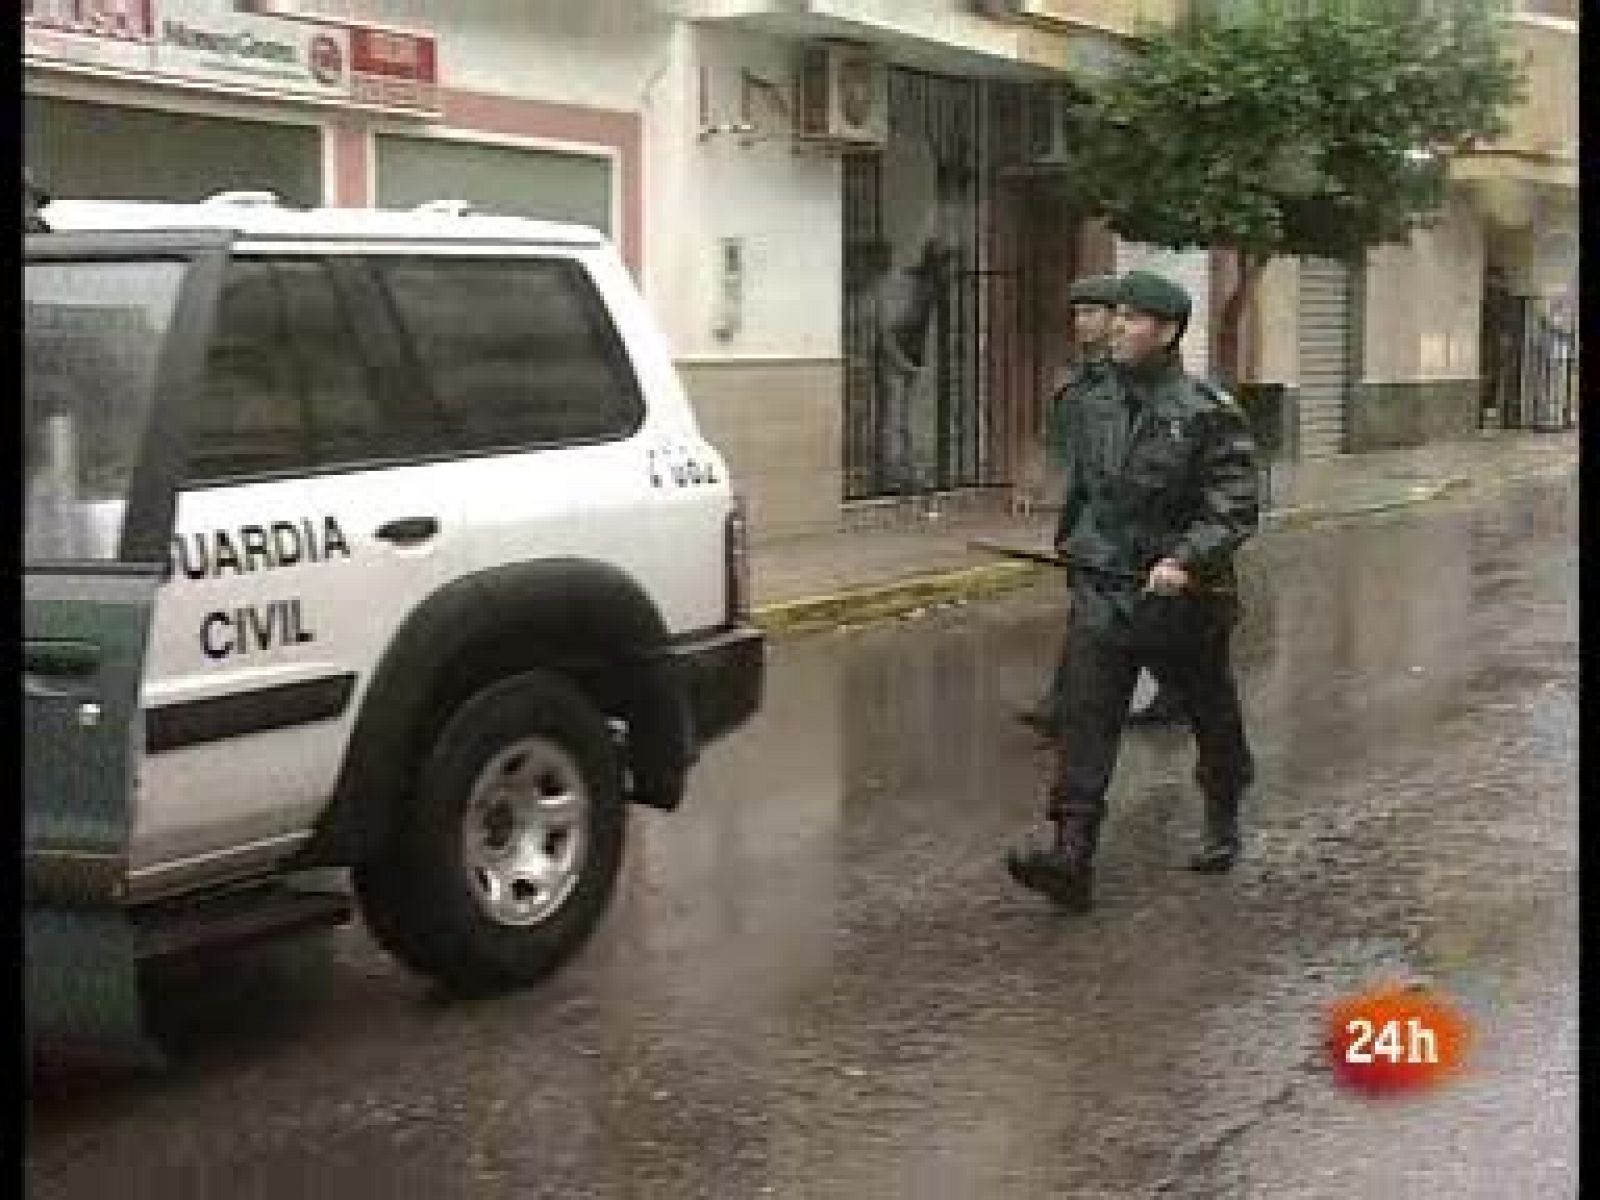  En La Mojonera permanece un amplio dispositivo policial.